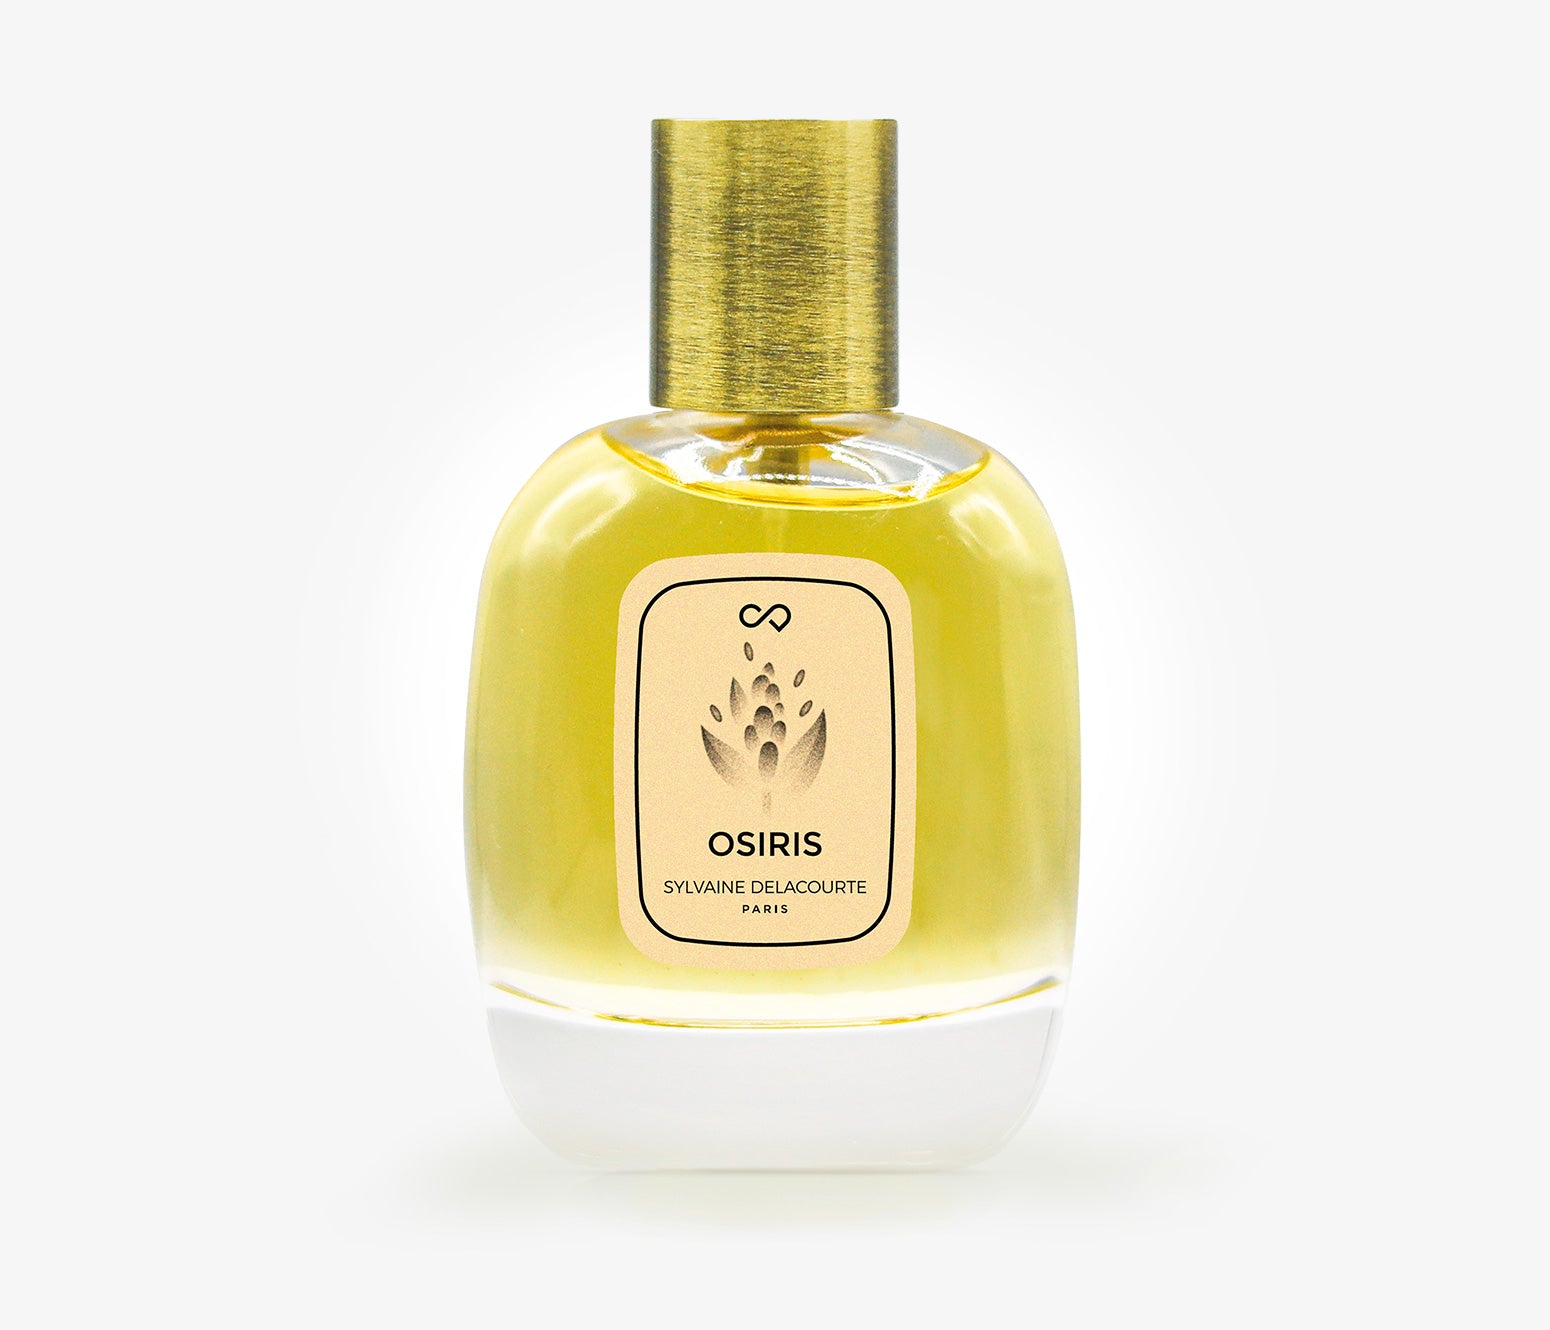 Sylvaine Delacourte - Osiris - 30ml - WQO001 - product image - Fragrance - Les Senteurs